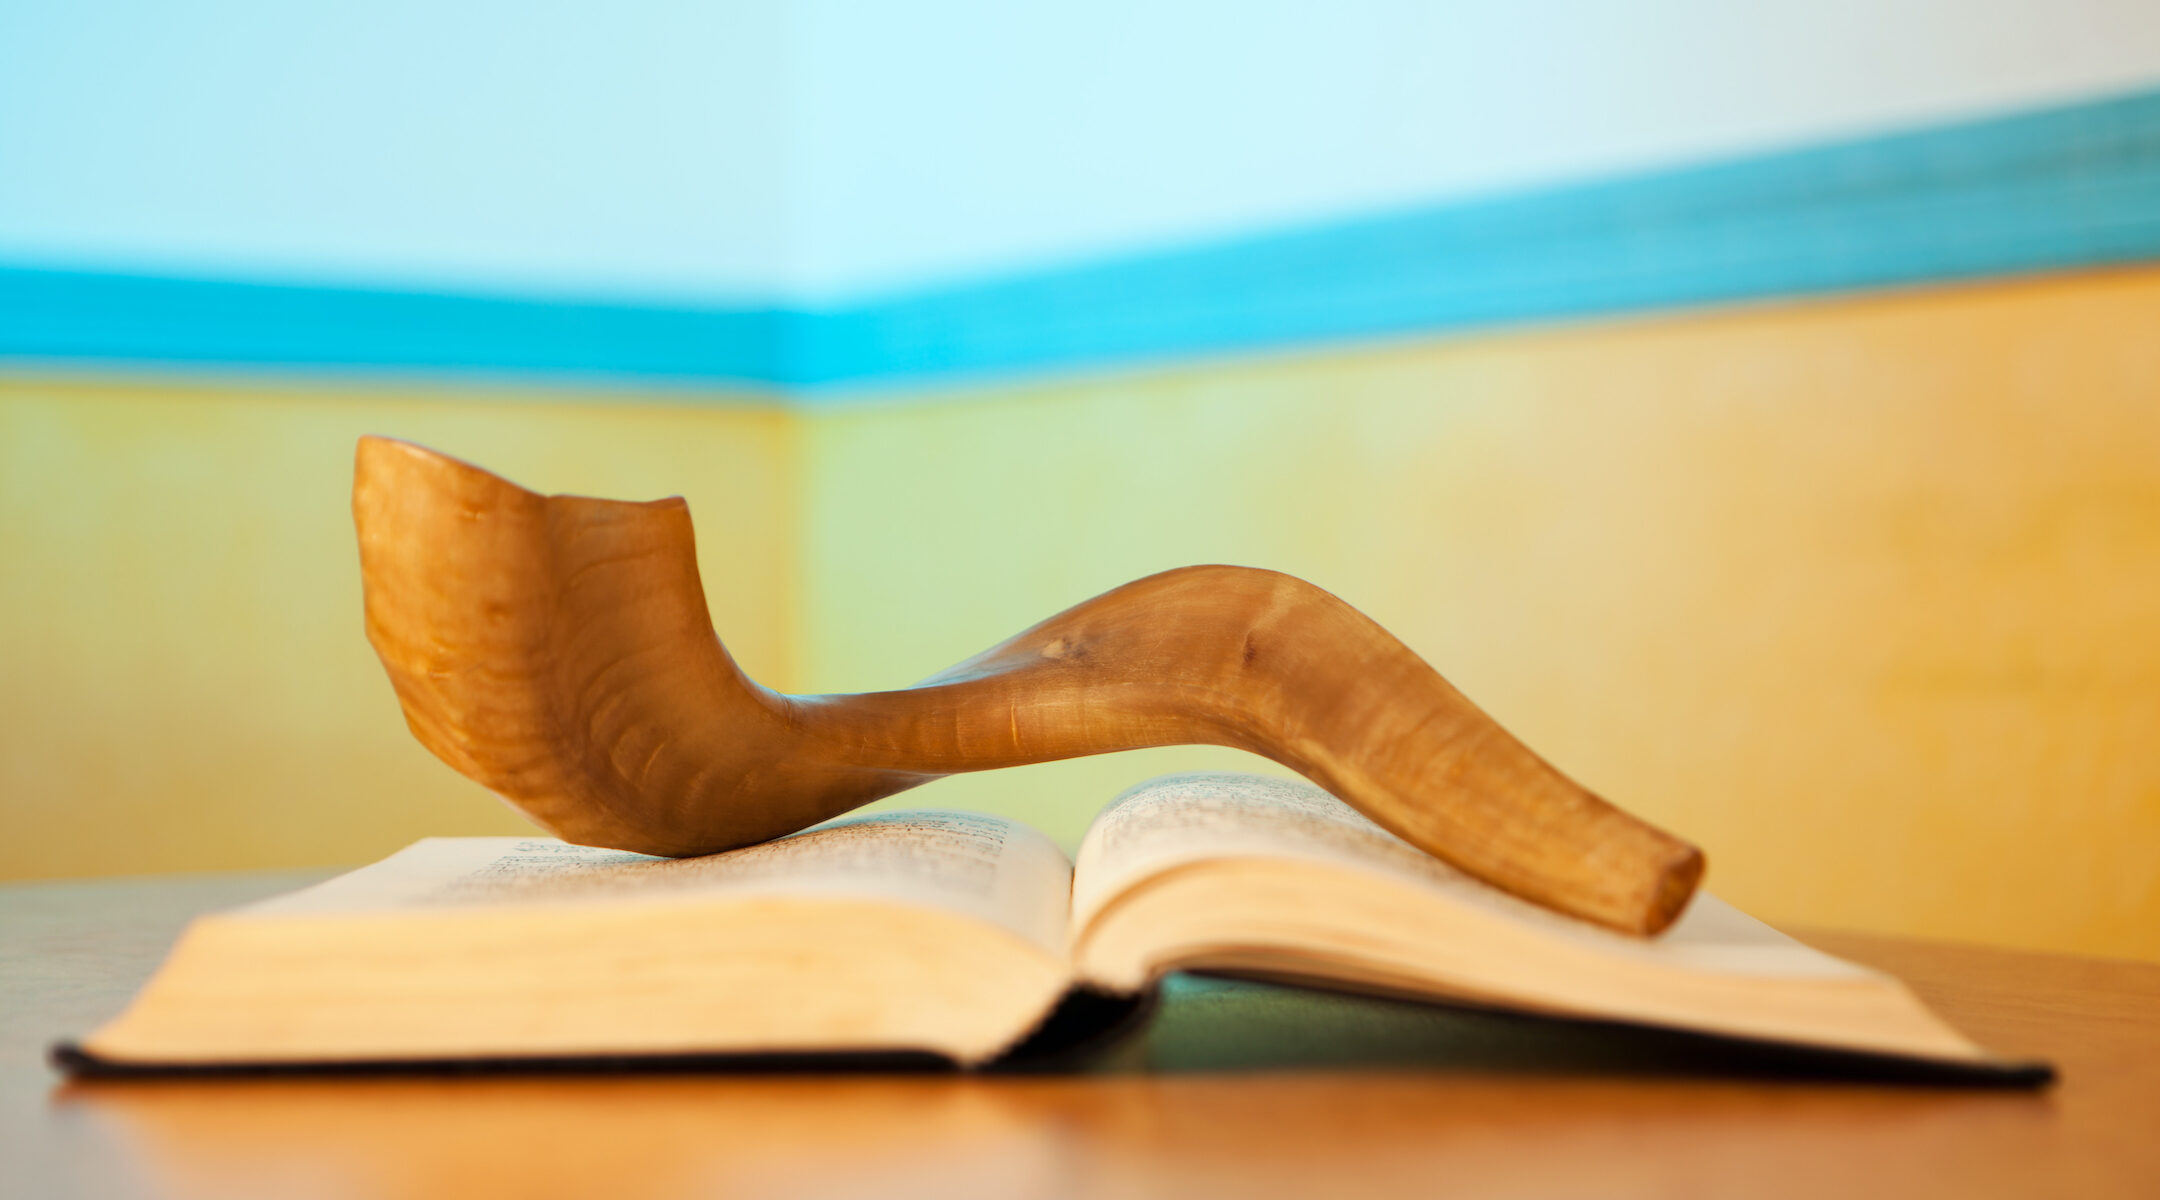 shofar on prayer book